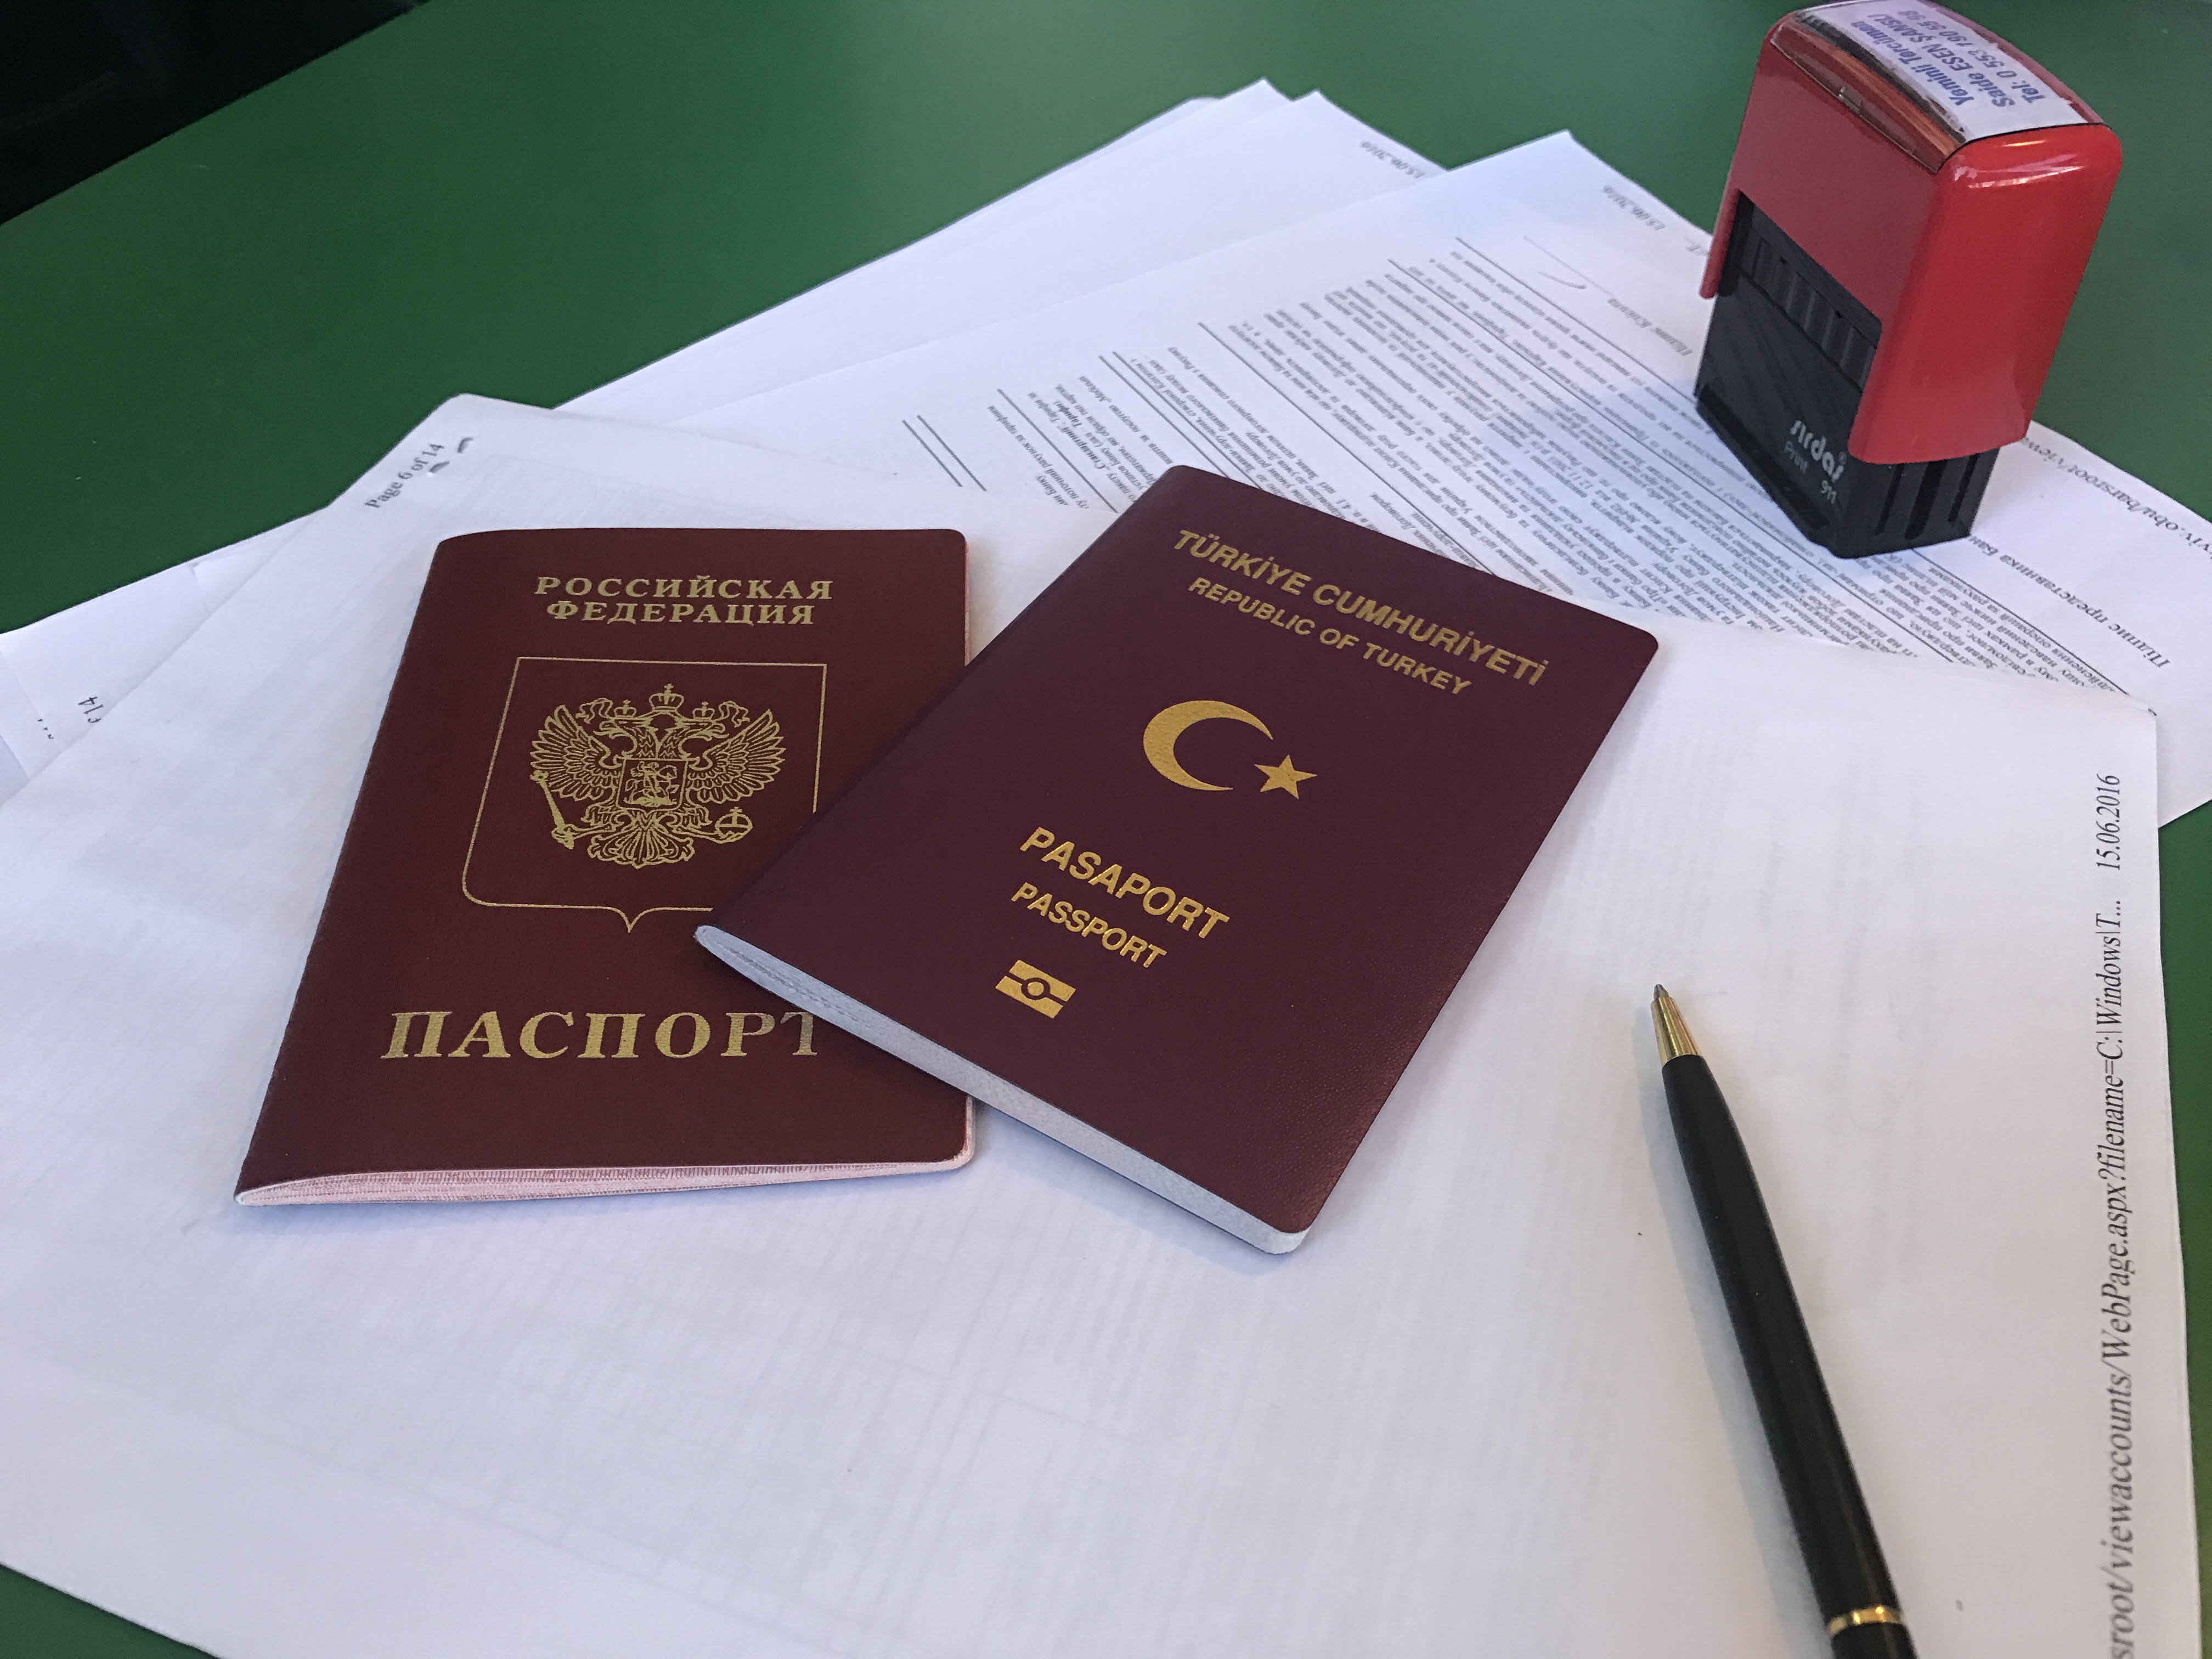   Обязательно ли носить с собой паспорт в Турции на случаи проверки? 